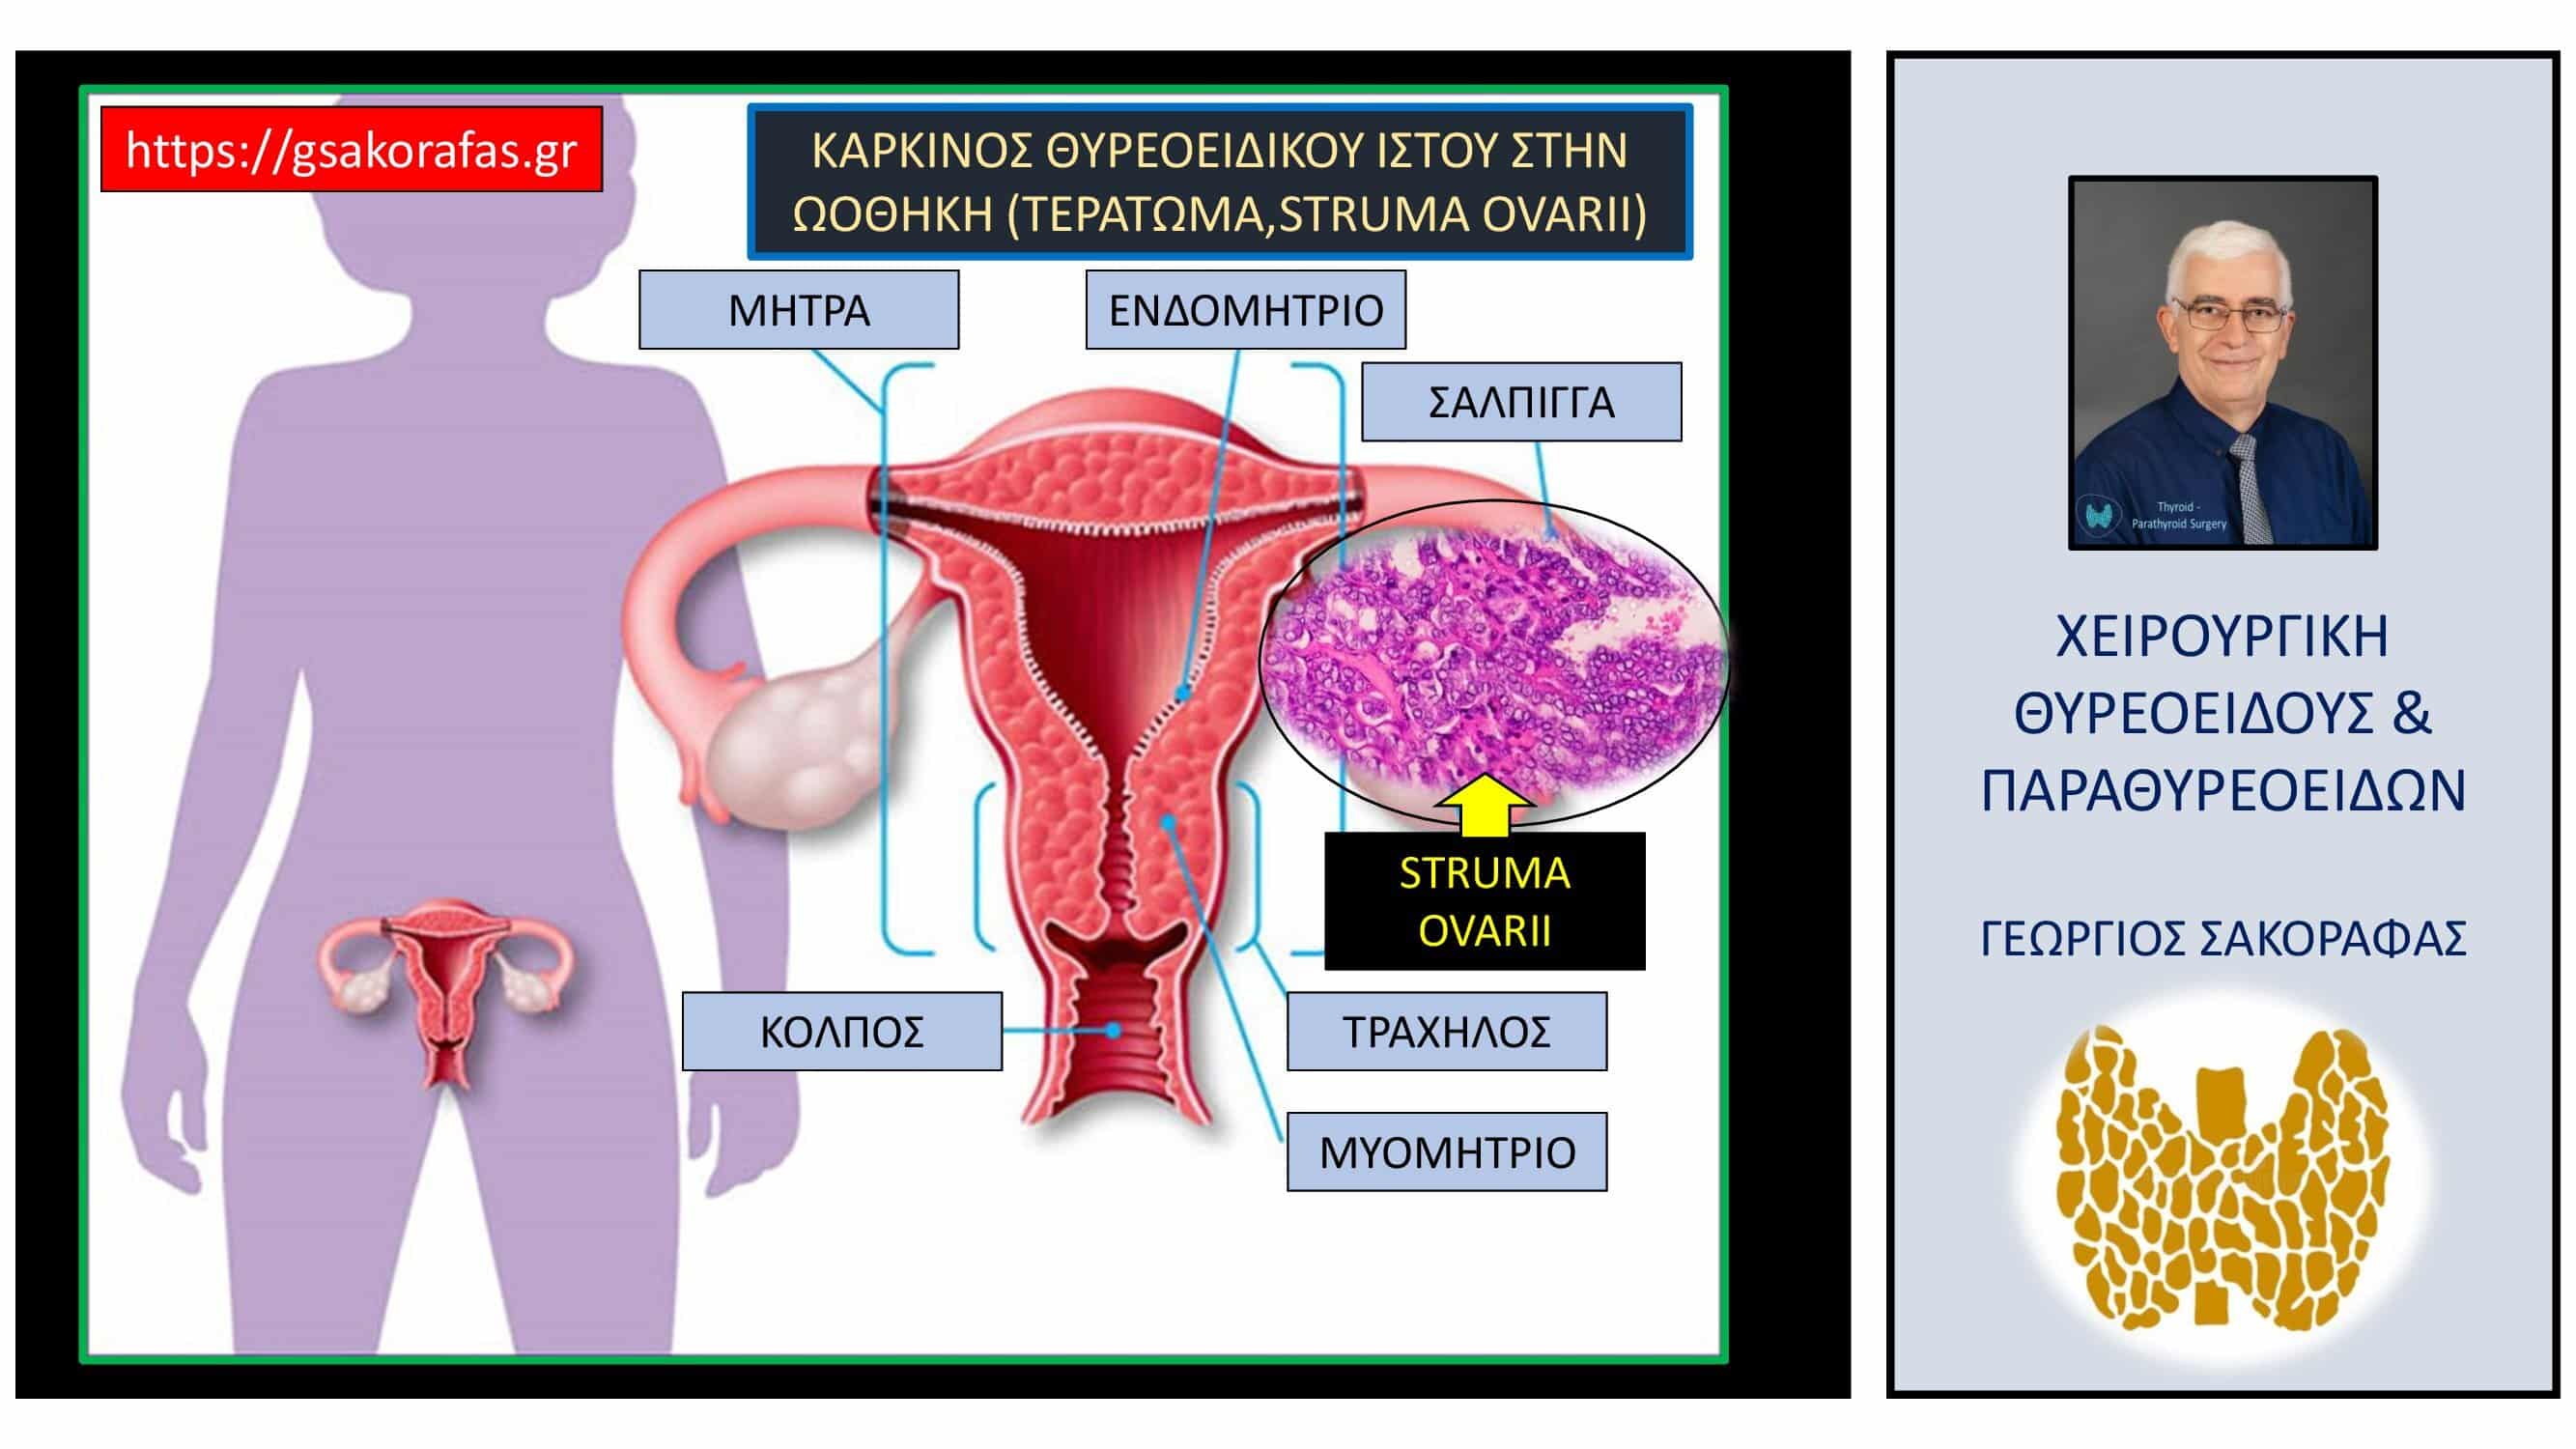 Έκτοπος καρκίνος θυρεοειδούς (ωοθήκη)– ανάπτυξη καρκίνου θυρεοειδούς σε έκτοπο θυρεοειδικό ιστό στην ωοθήκη (με αφορμή ασθενή μας)